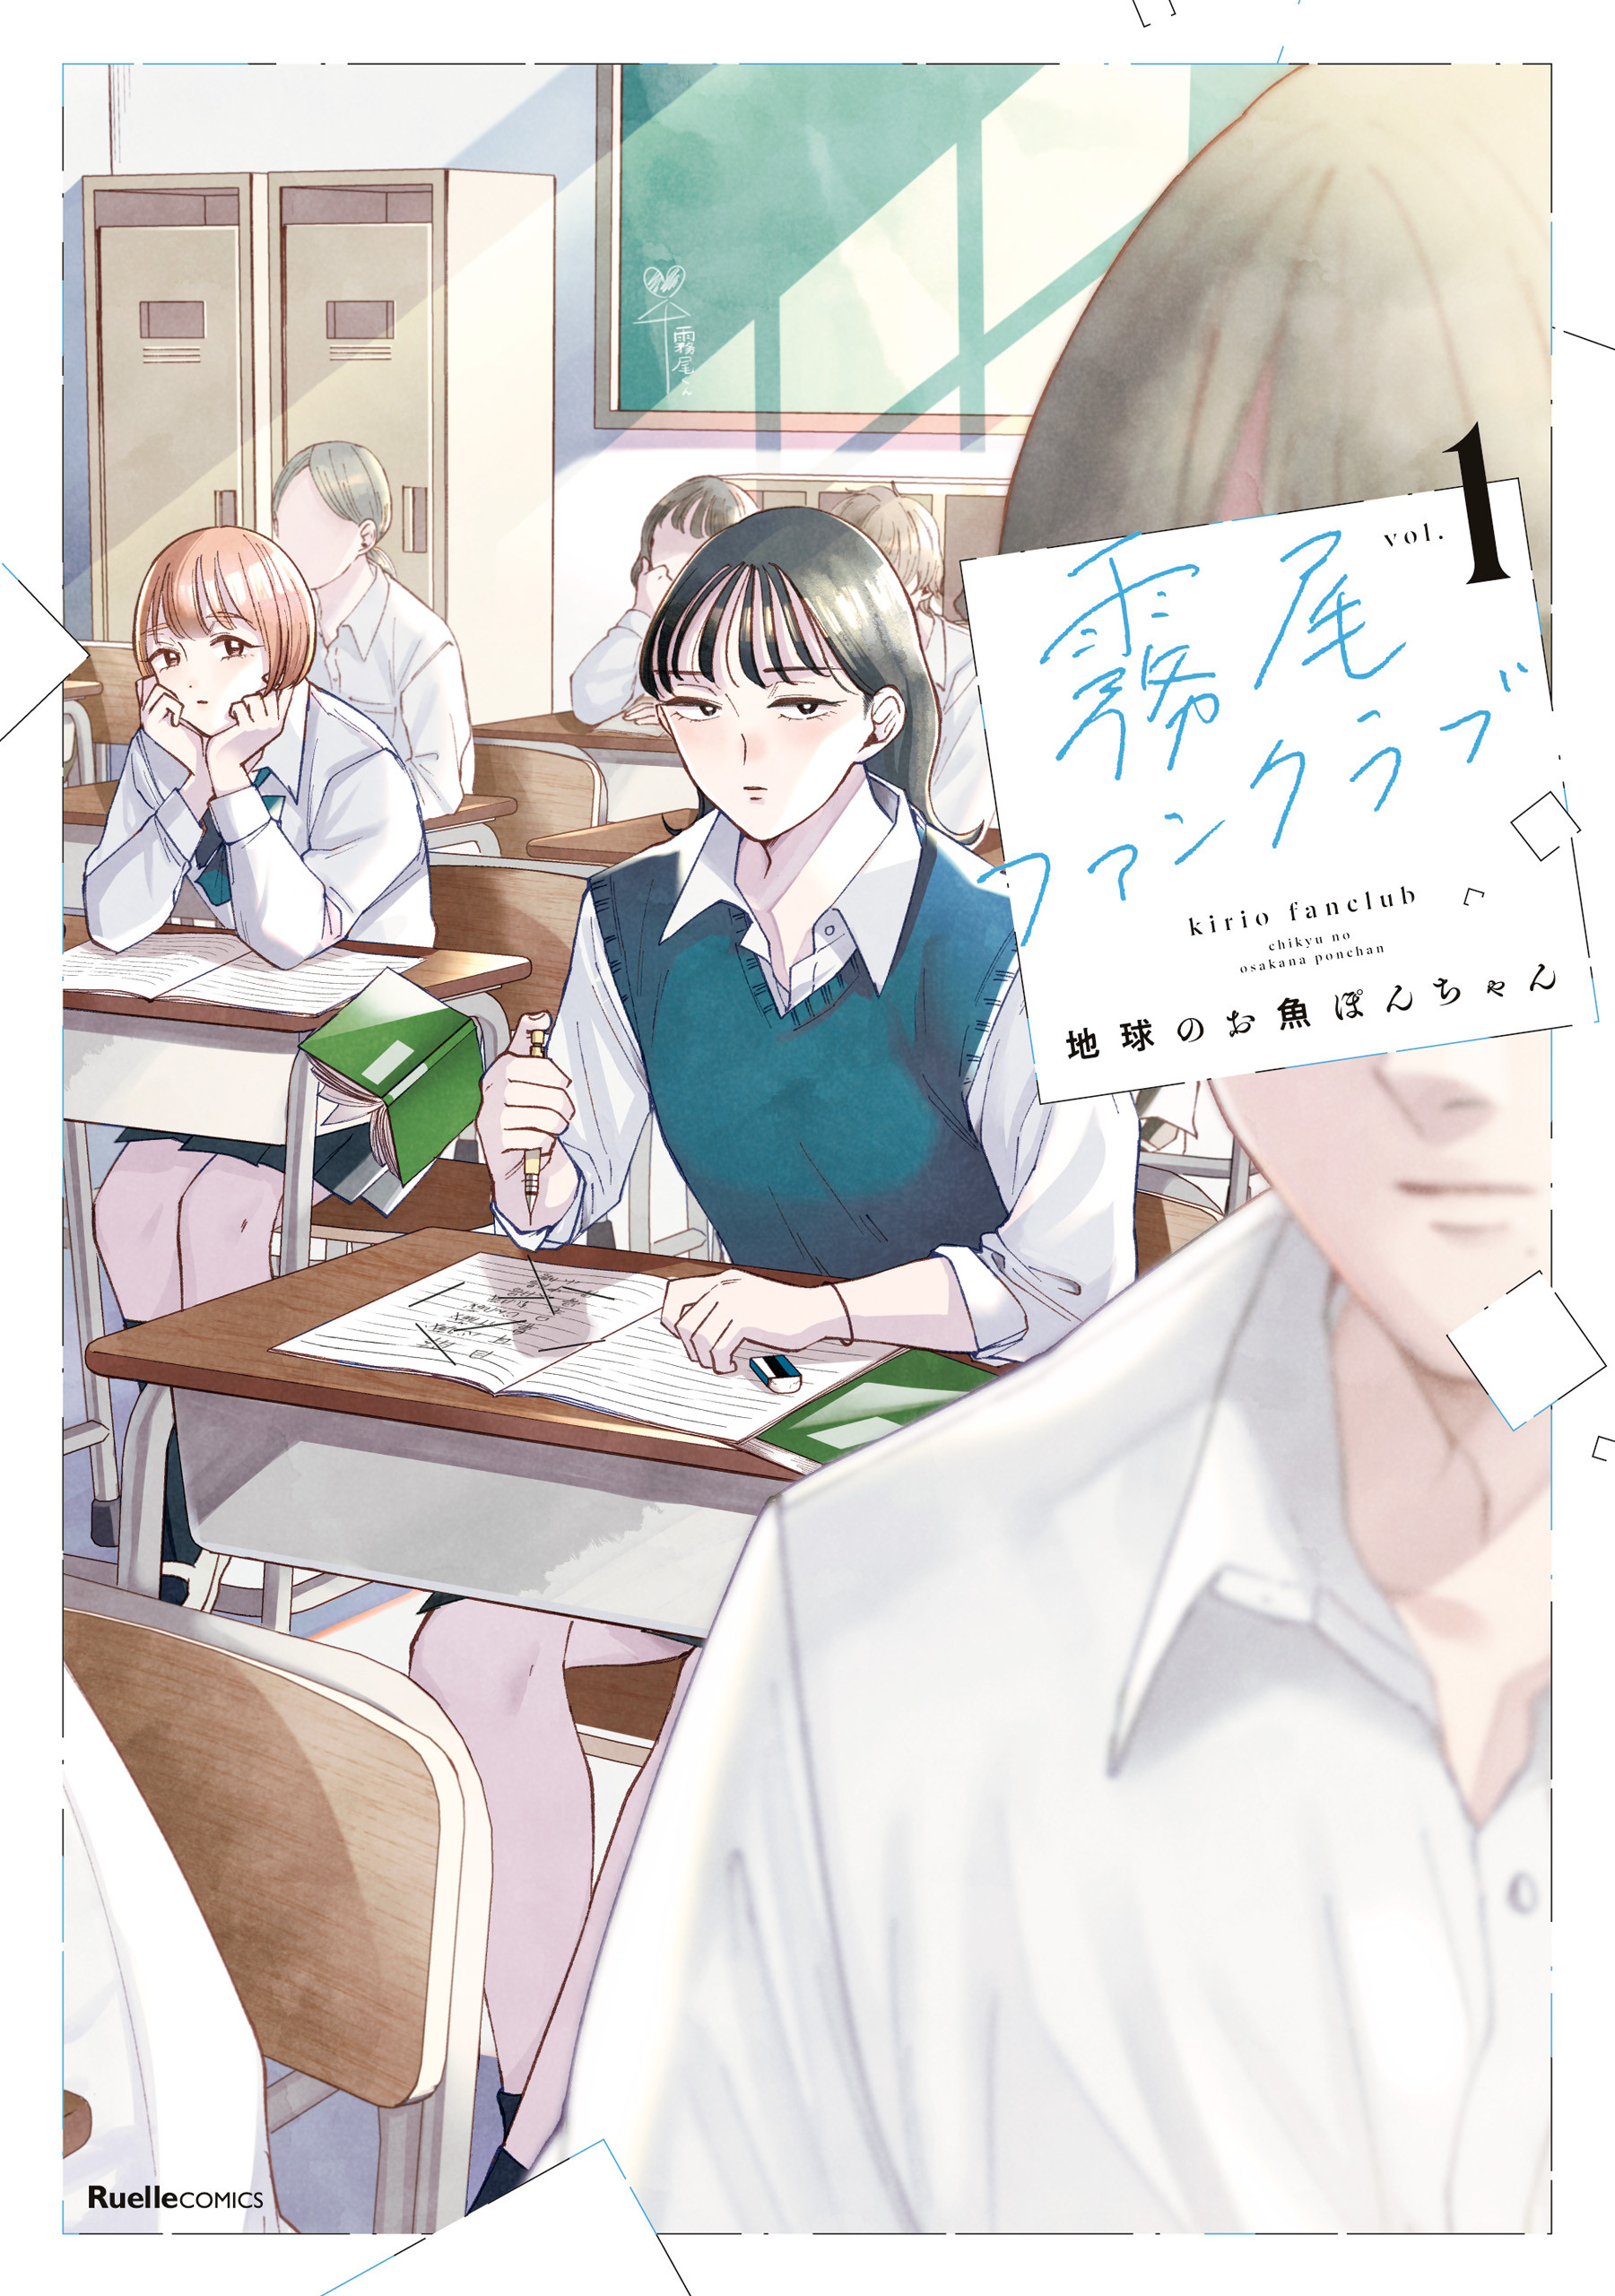 Kono Manga ga Sugoi!'Classificações de 2024 reveladas - All Things Anime